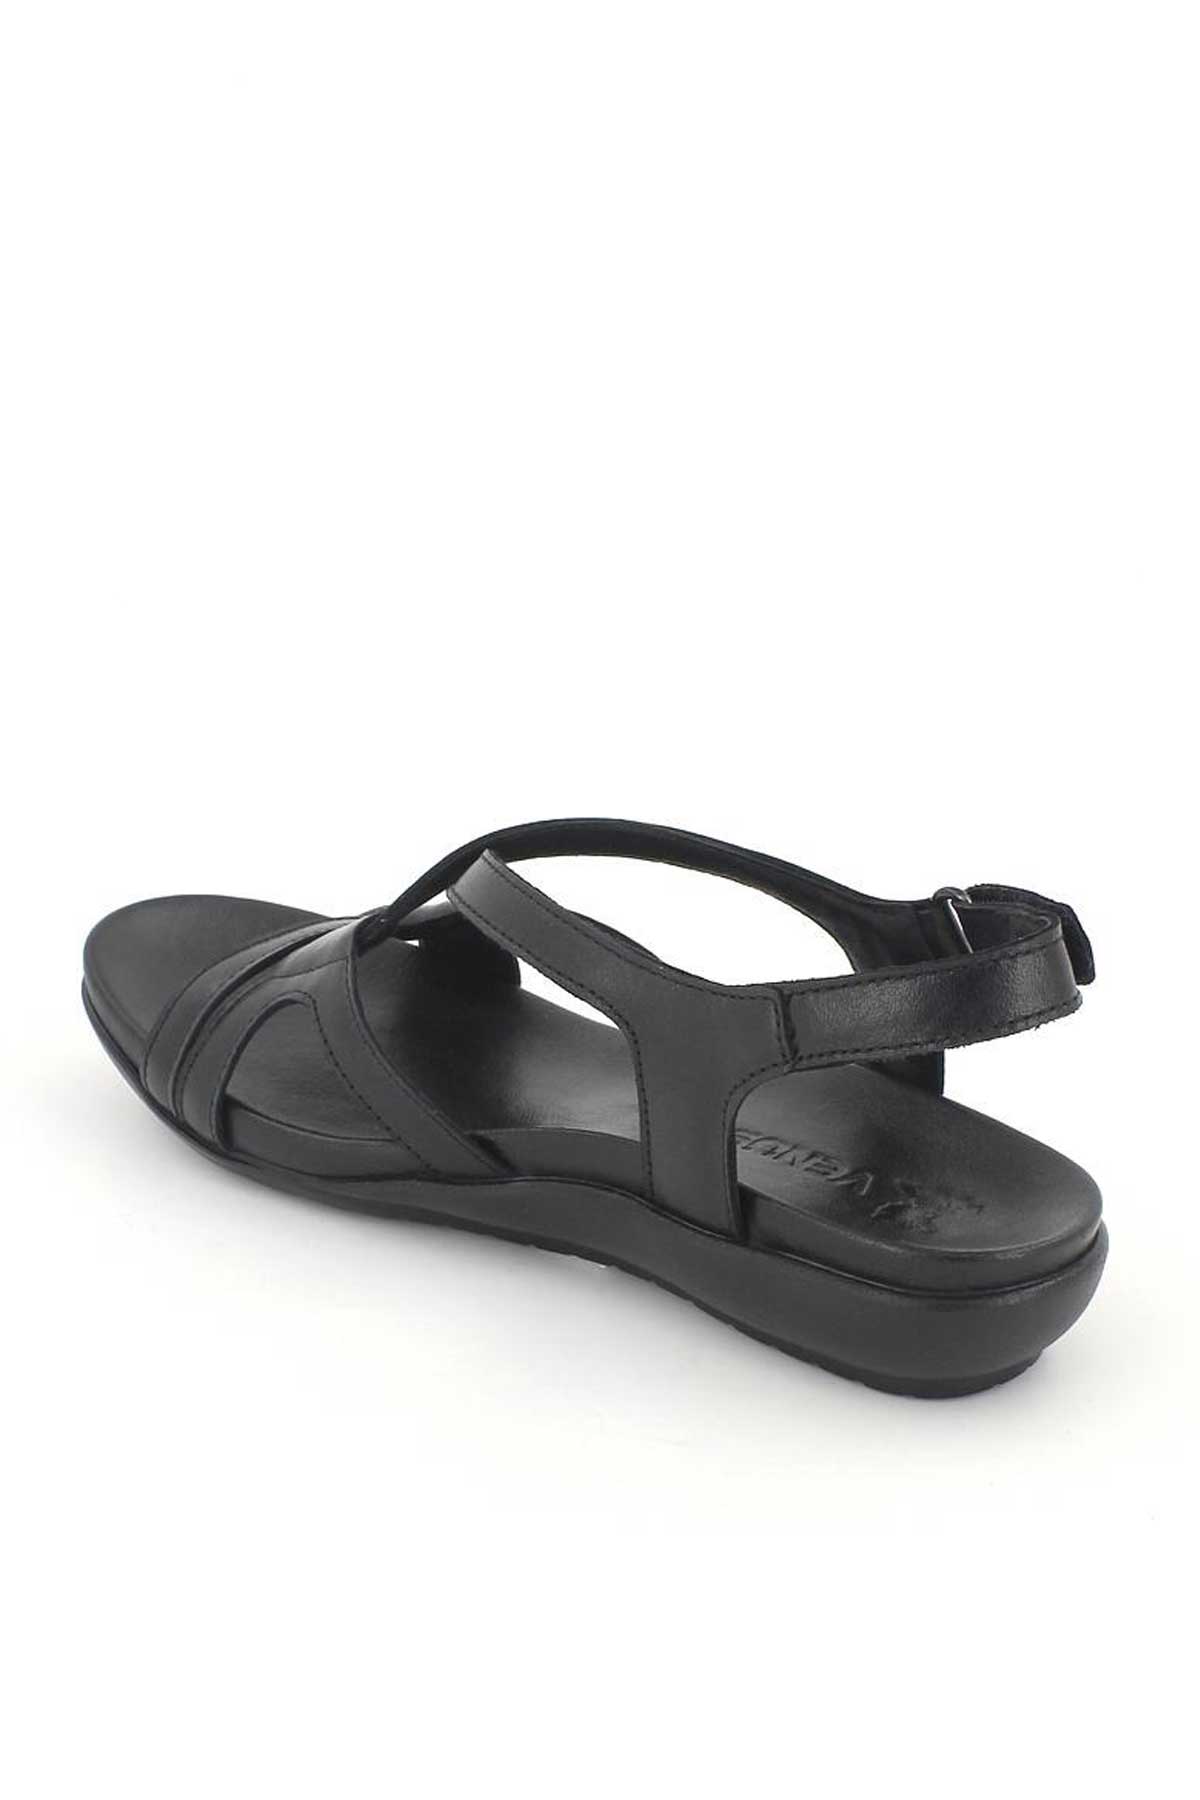 Kadın Comfort Sandalet Siyah 206Y